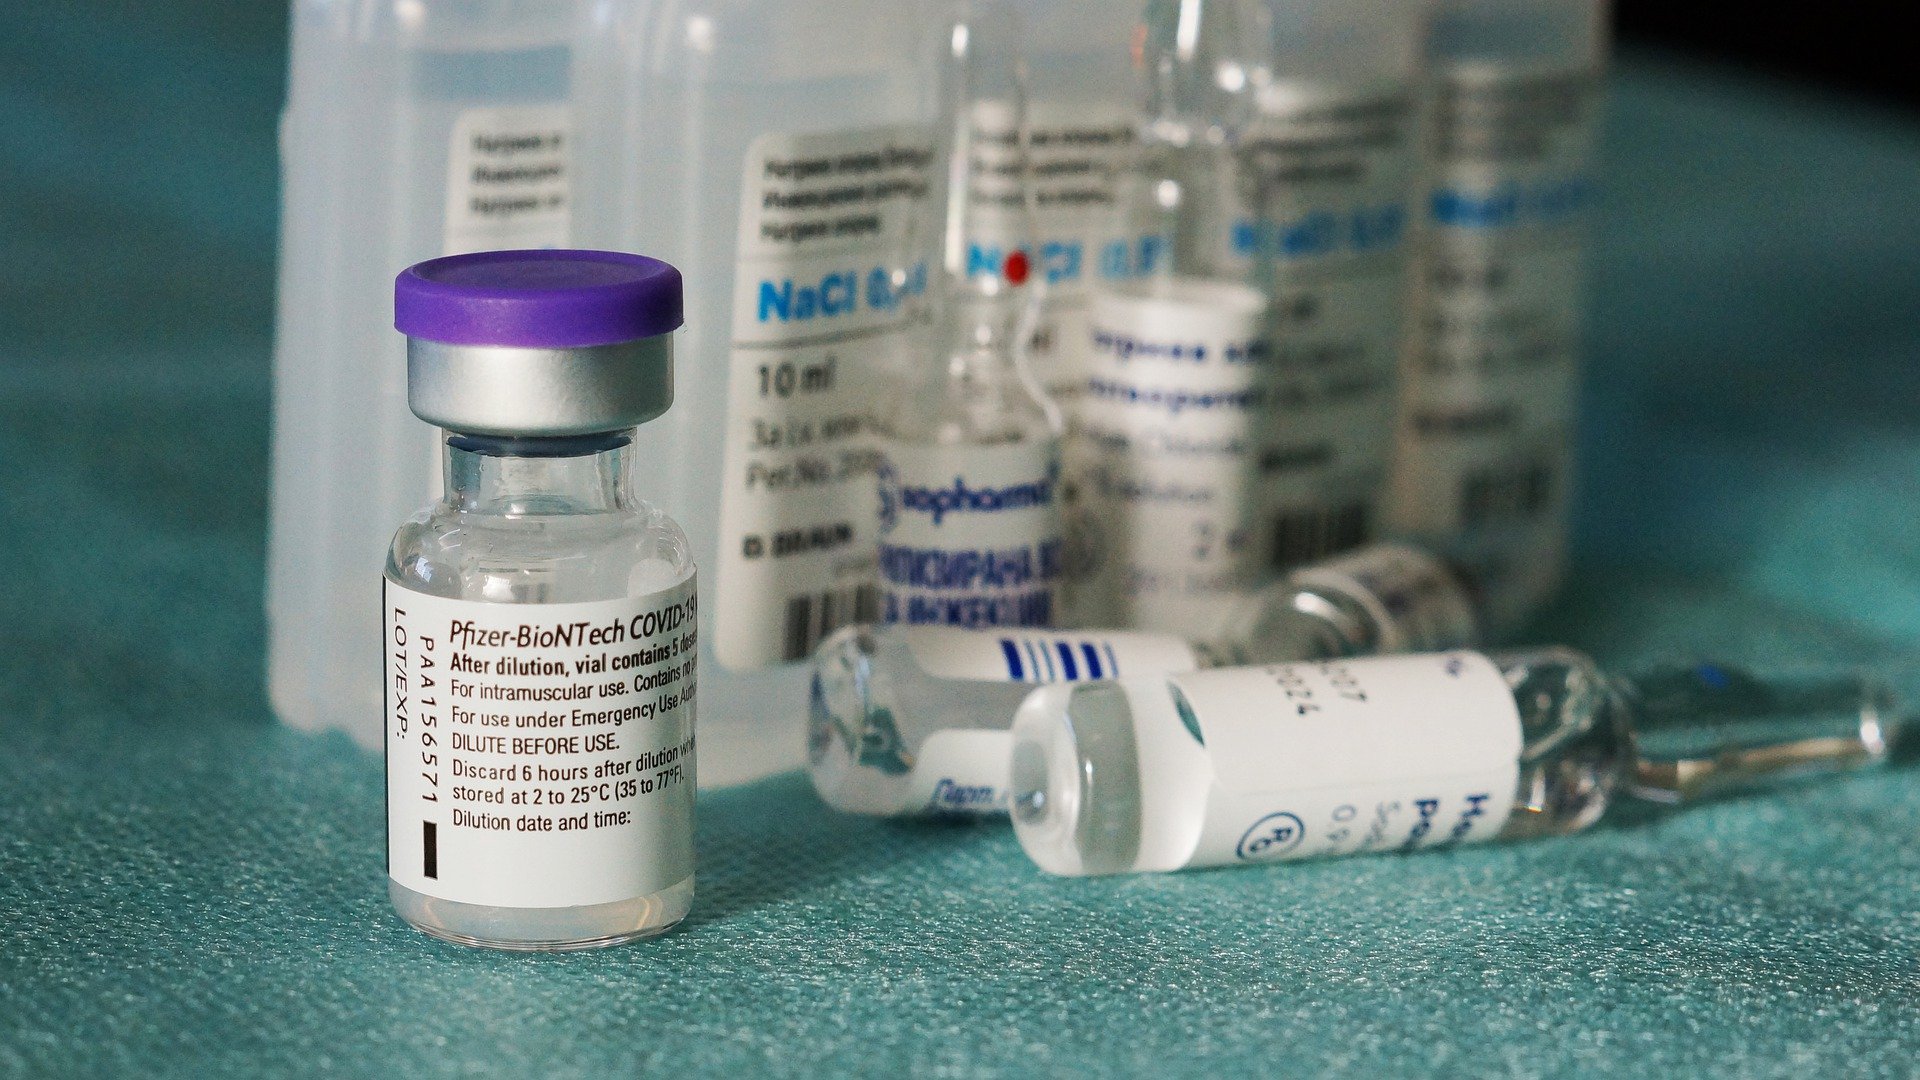 Bulgaria scapă de vaccinurile anti-Covid expirate  și dorește rezilierea contractului cu BioNTech/Pfizer  